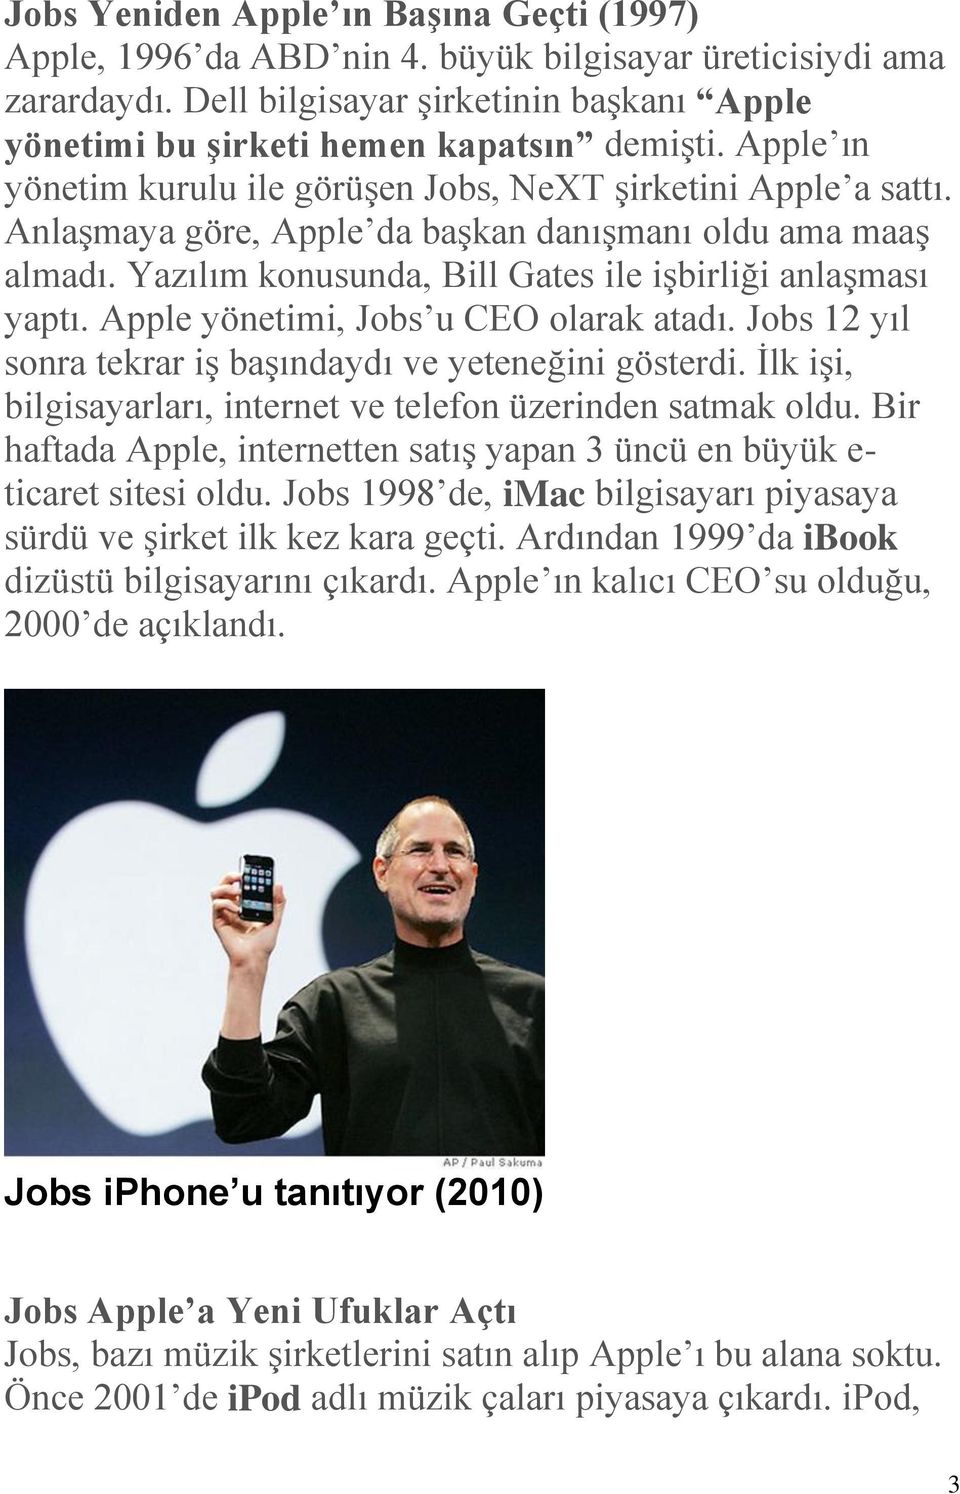 Apple yönetimi, Jobs u CEO olarak atadı. Jobs 12 yıl sonra tekrar iş başındaydı ve yeteneğini gösterdi. İlk işi, bilgisayarları, internet ve telefon üzerinden satmak oldu.